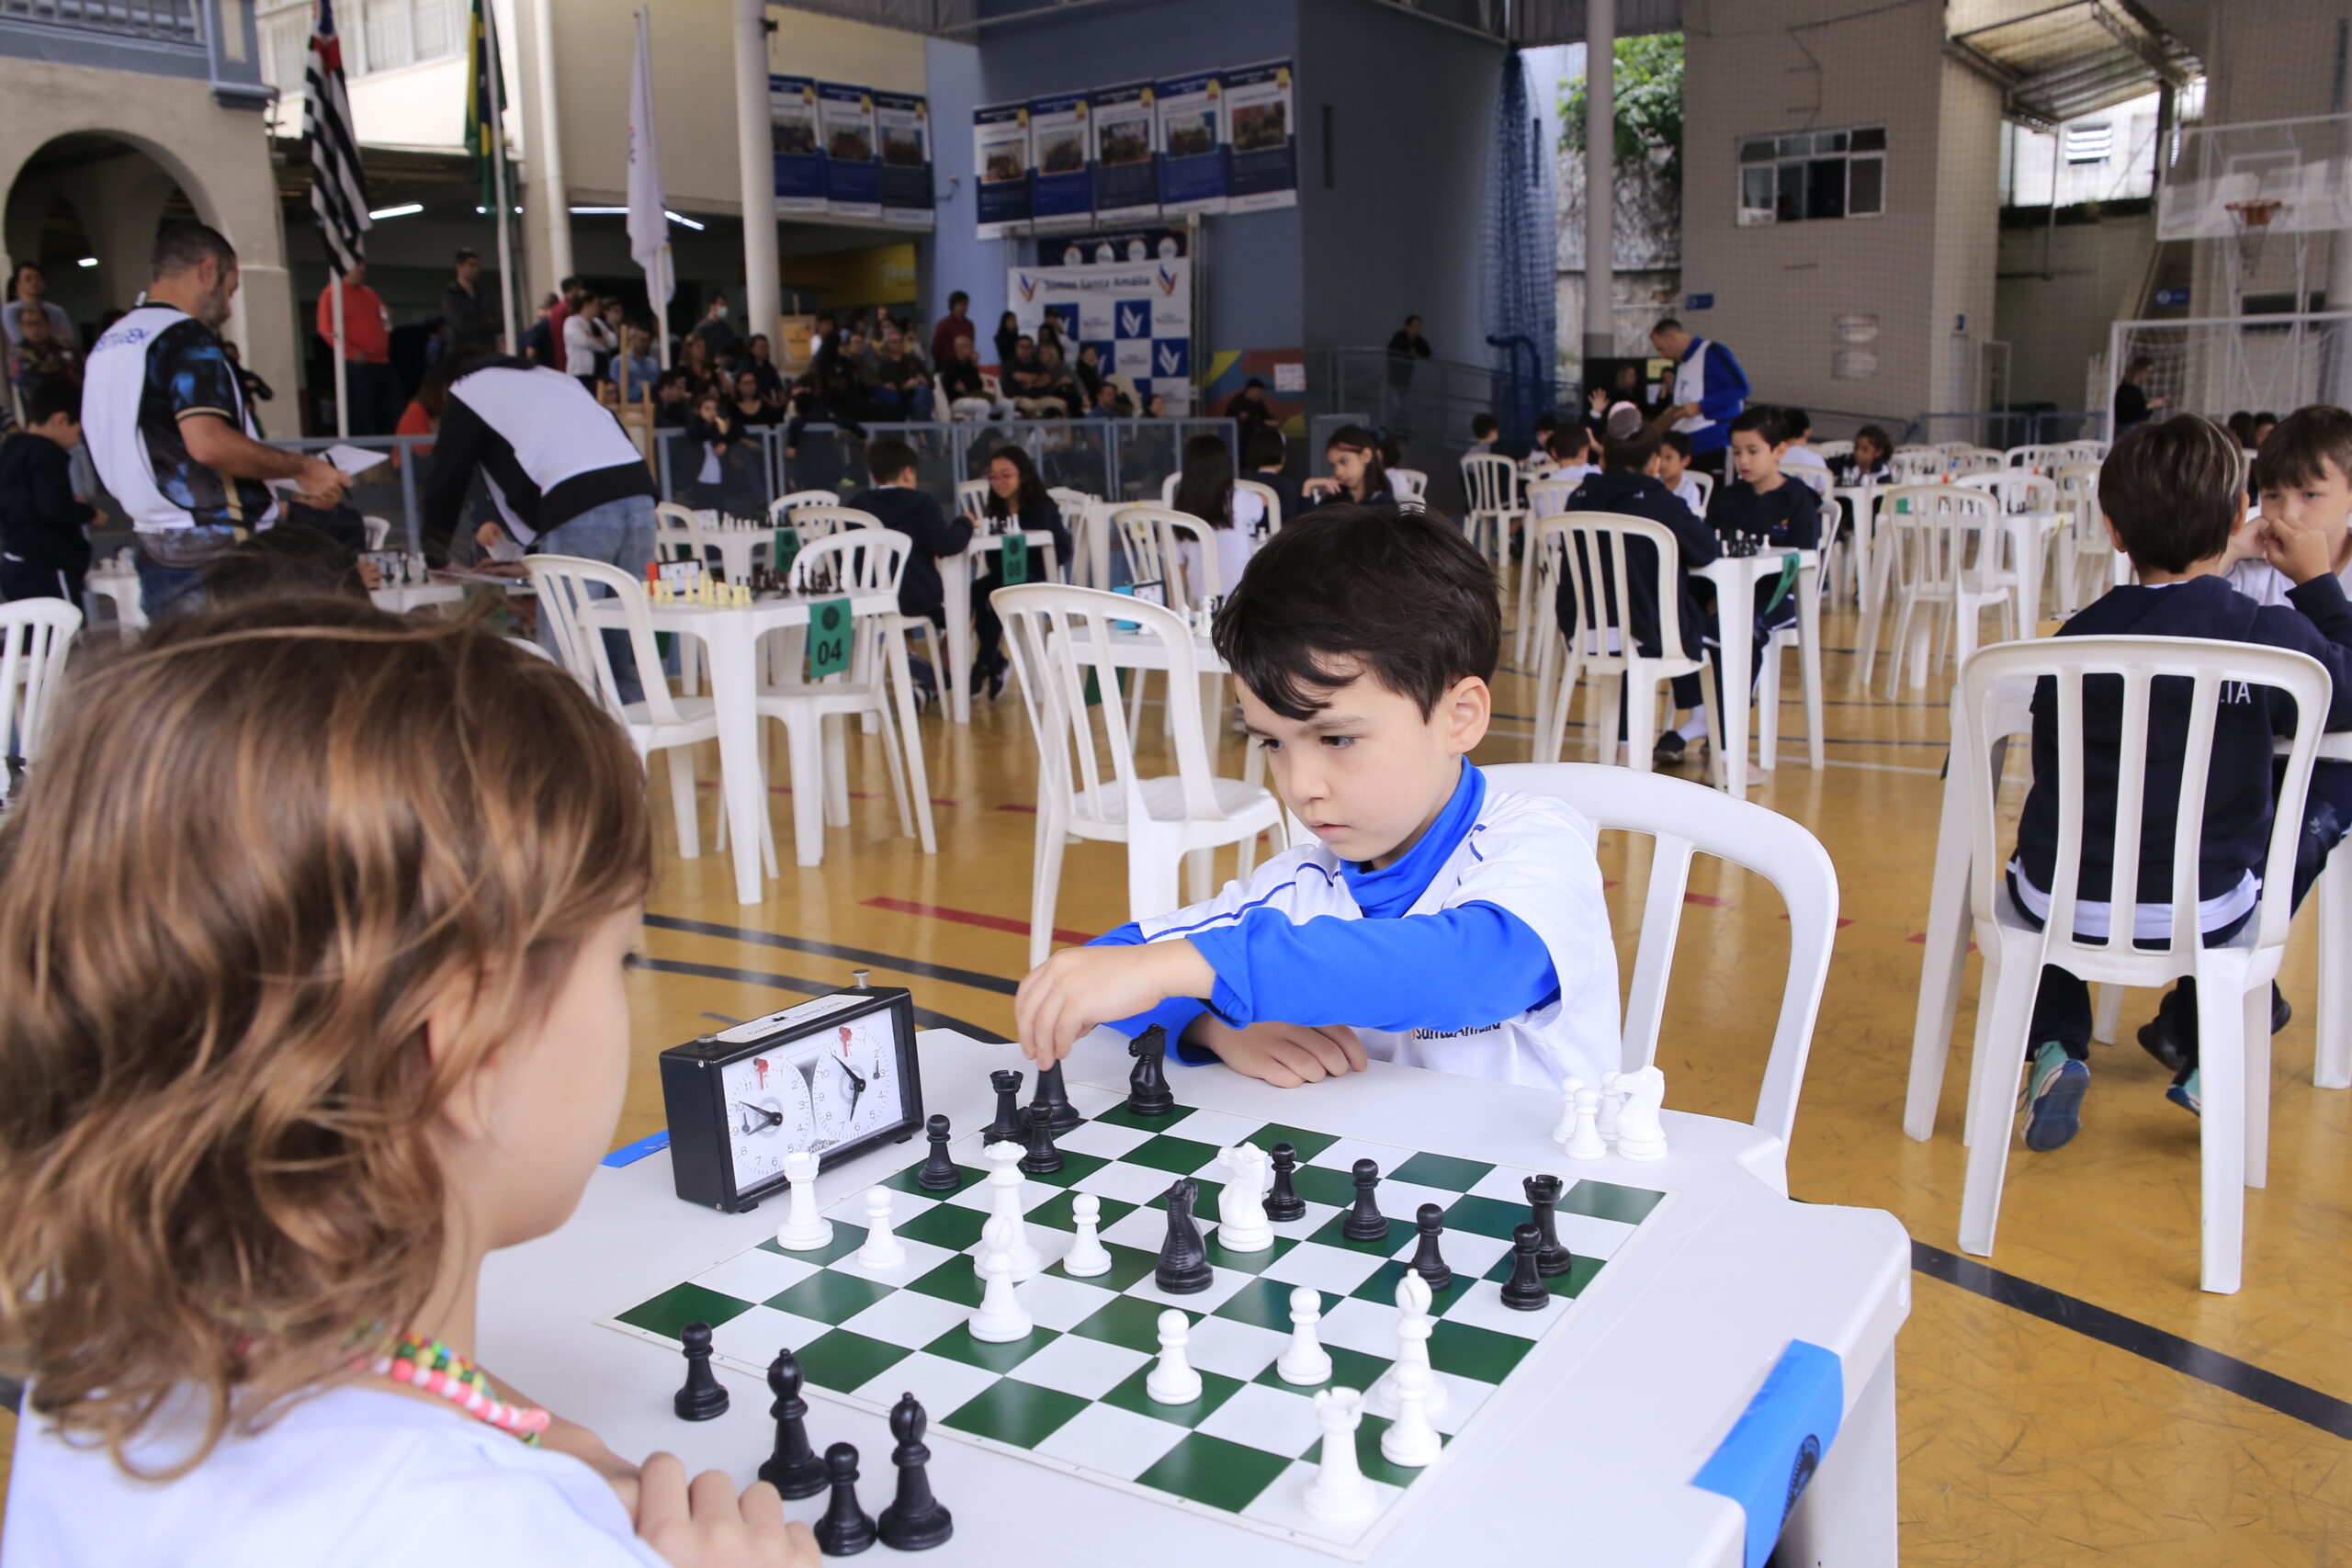 Colégio Santa Amália promove desenvolvimento por meio da prática do Xadrez